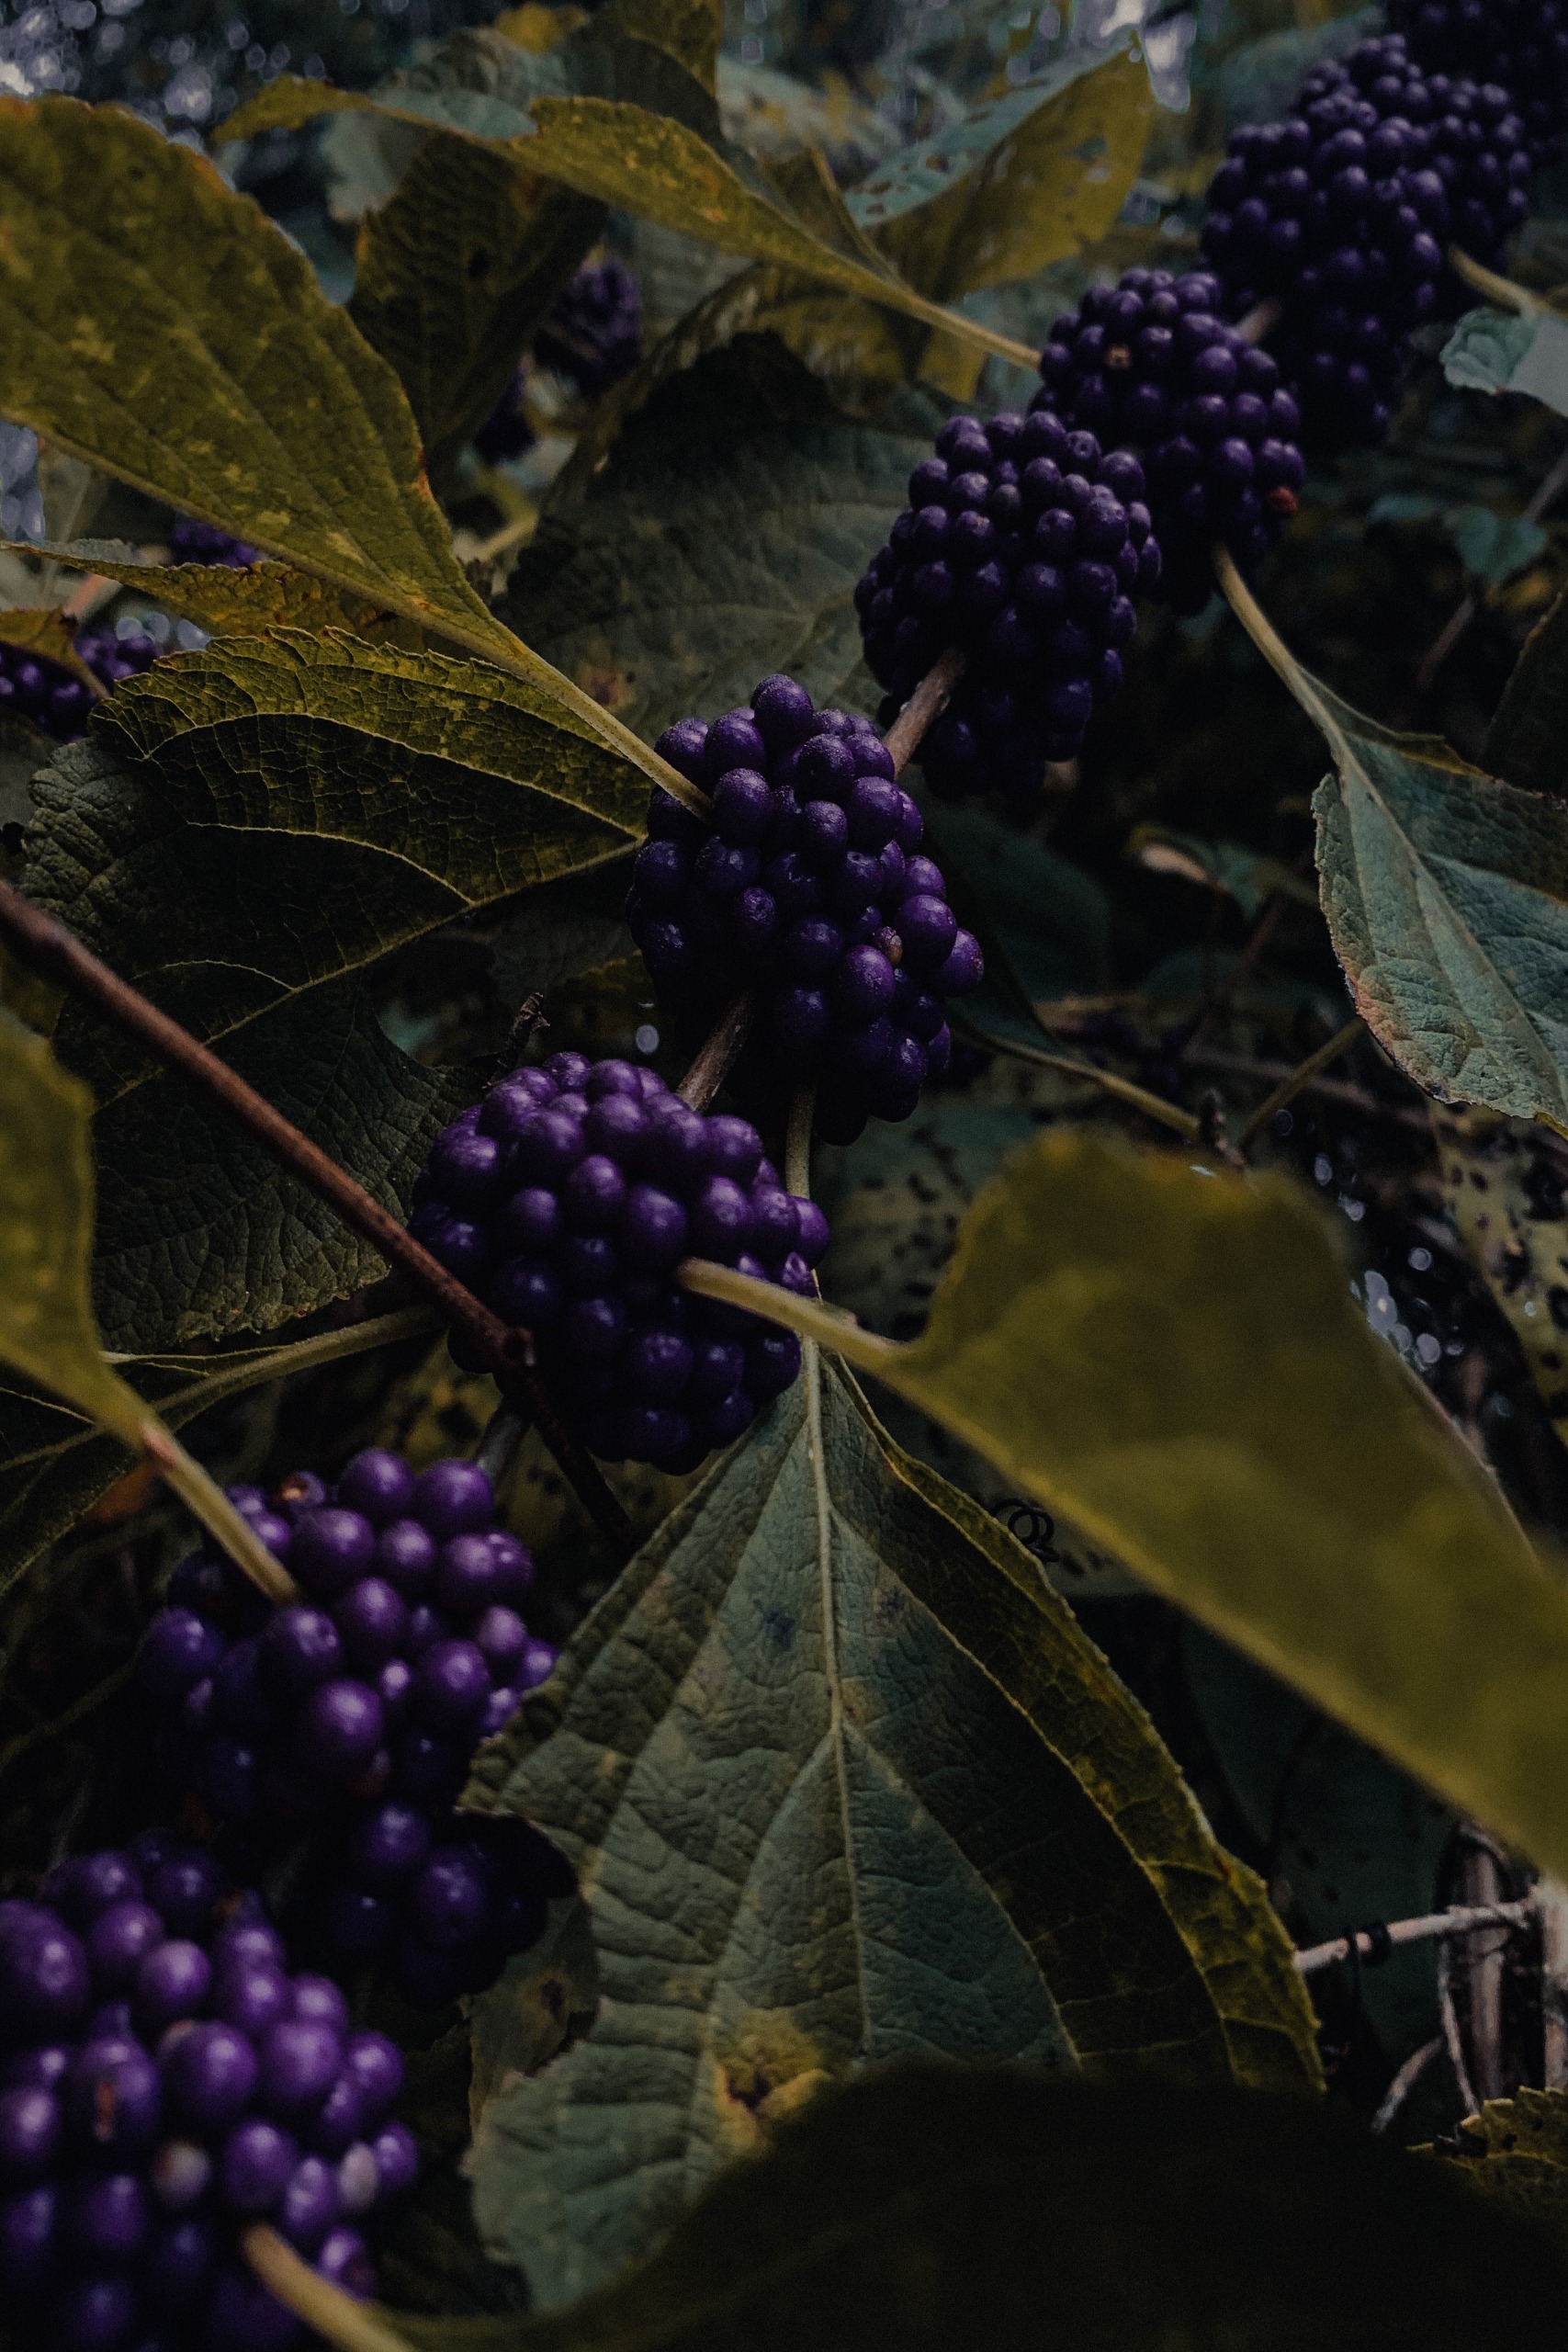 Purple blackberries among large dark green leaves